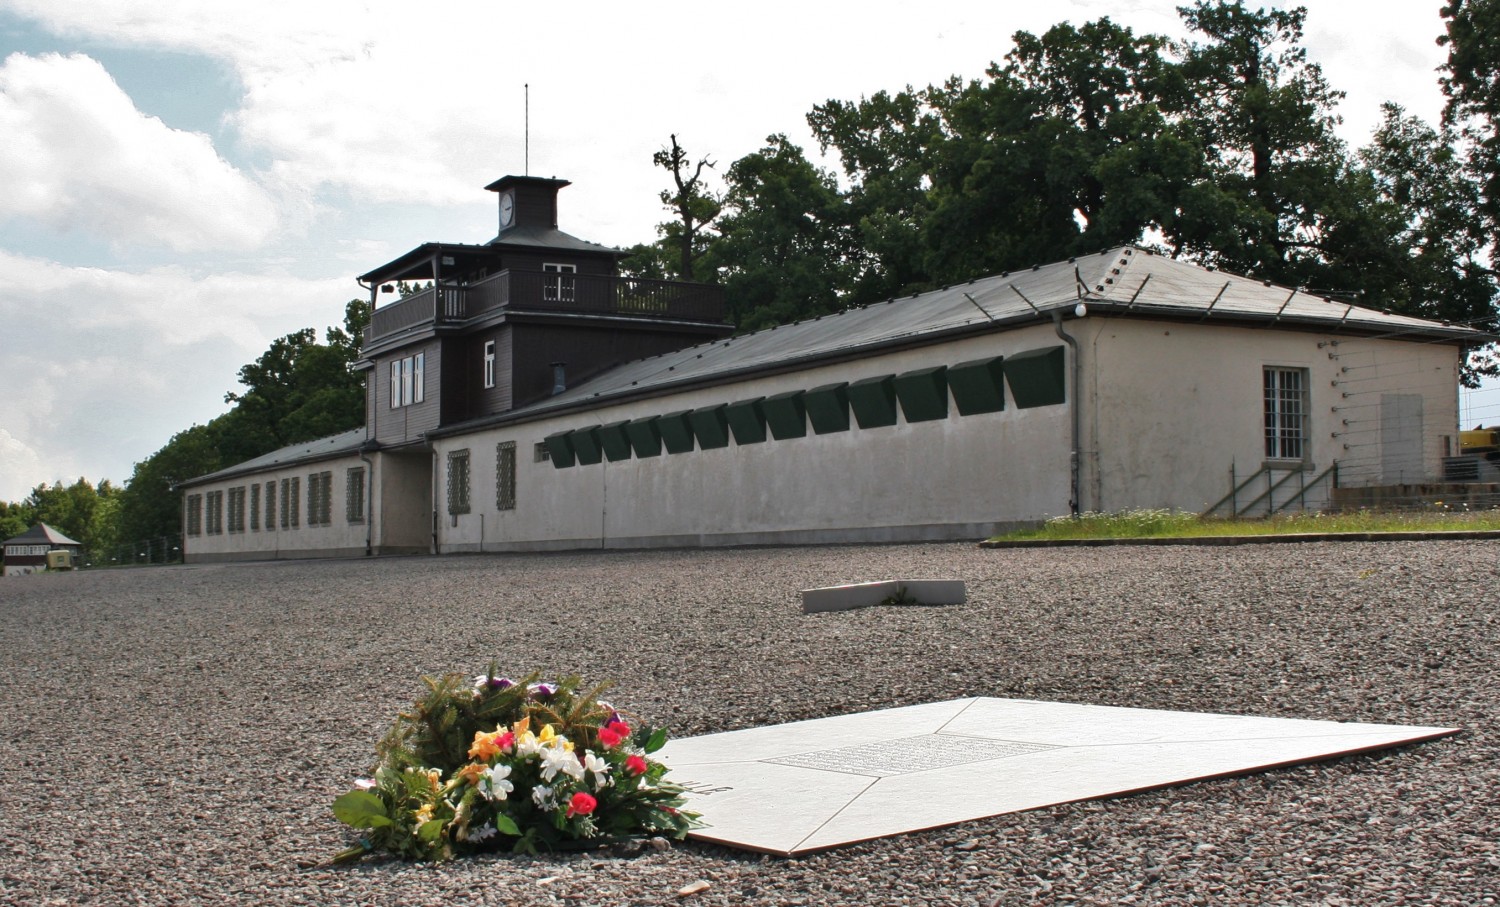 Online herdenken blijft, denkt Buchenwald 